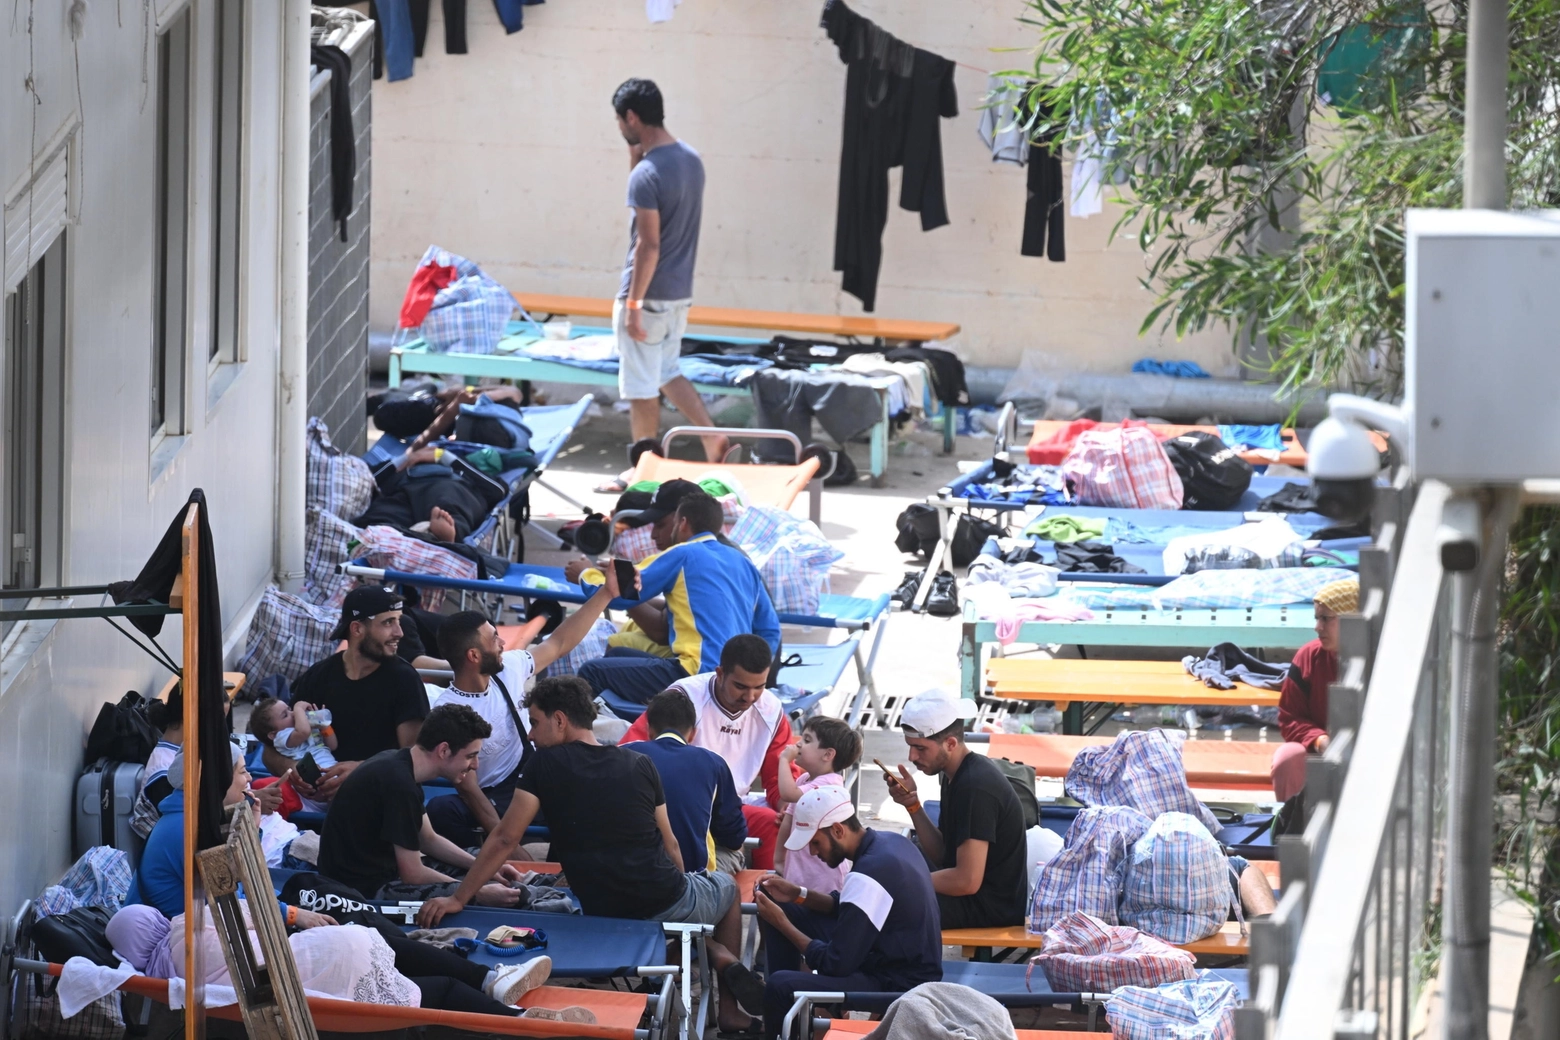 Migranti all'interno dell'hotspot di Lampedusa, foto del 19 settembre (Ansa)